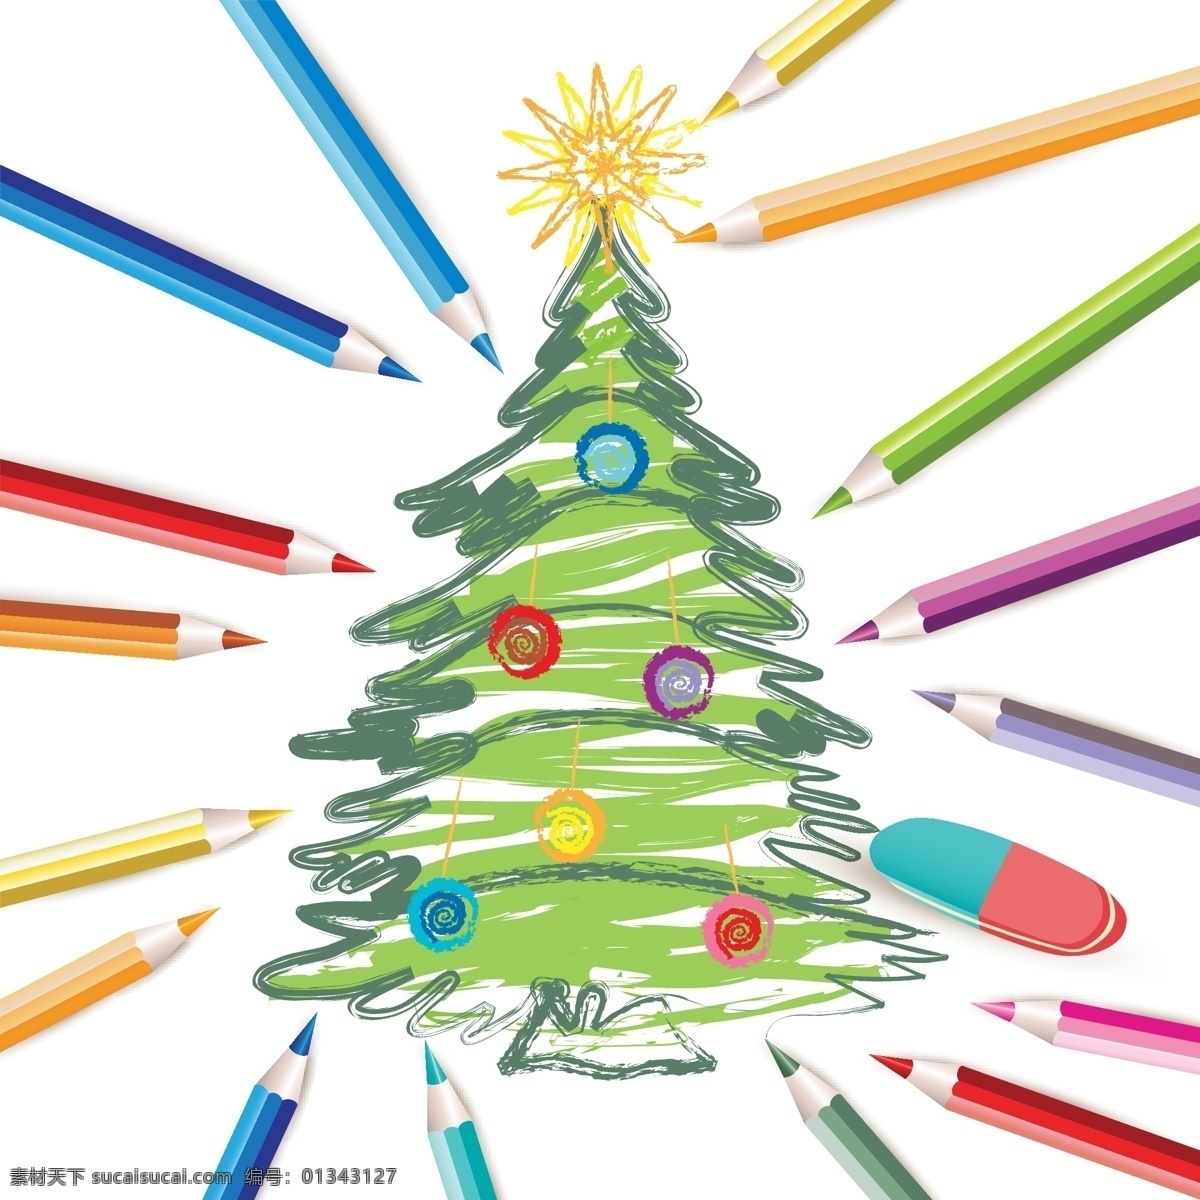 矢量 铅笔 彩色 圣诞树 插画 单色 花纹 圣诞节 矢量素材 图案 线条 节日素材